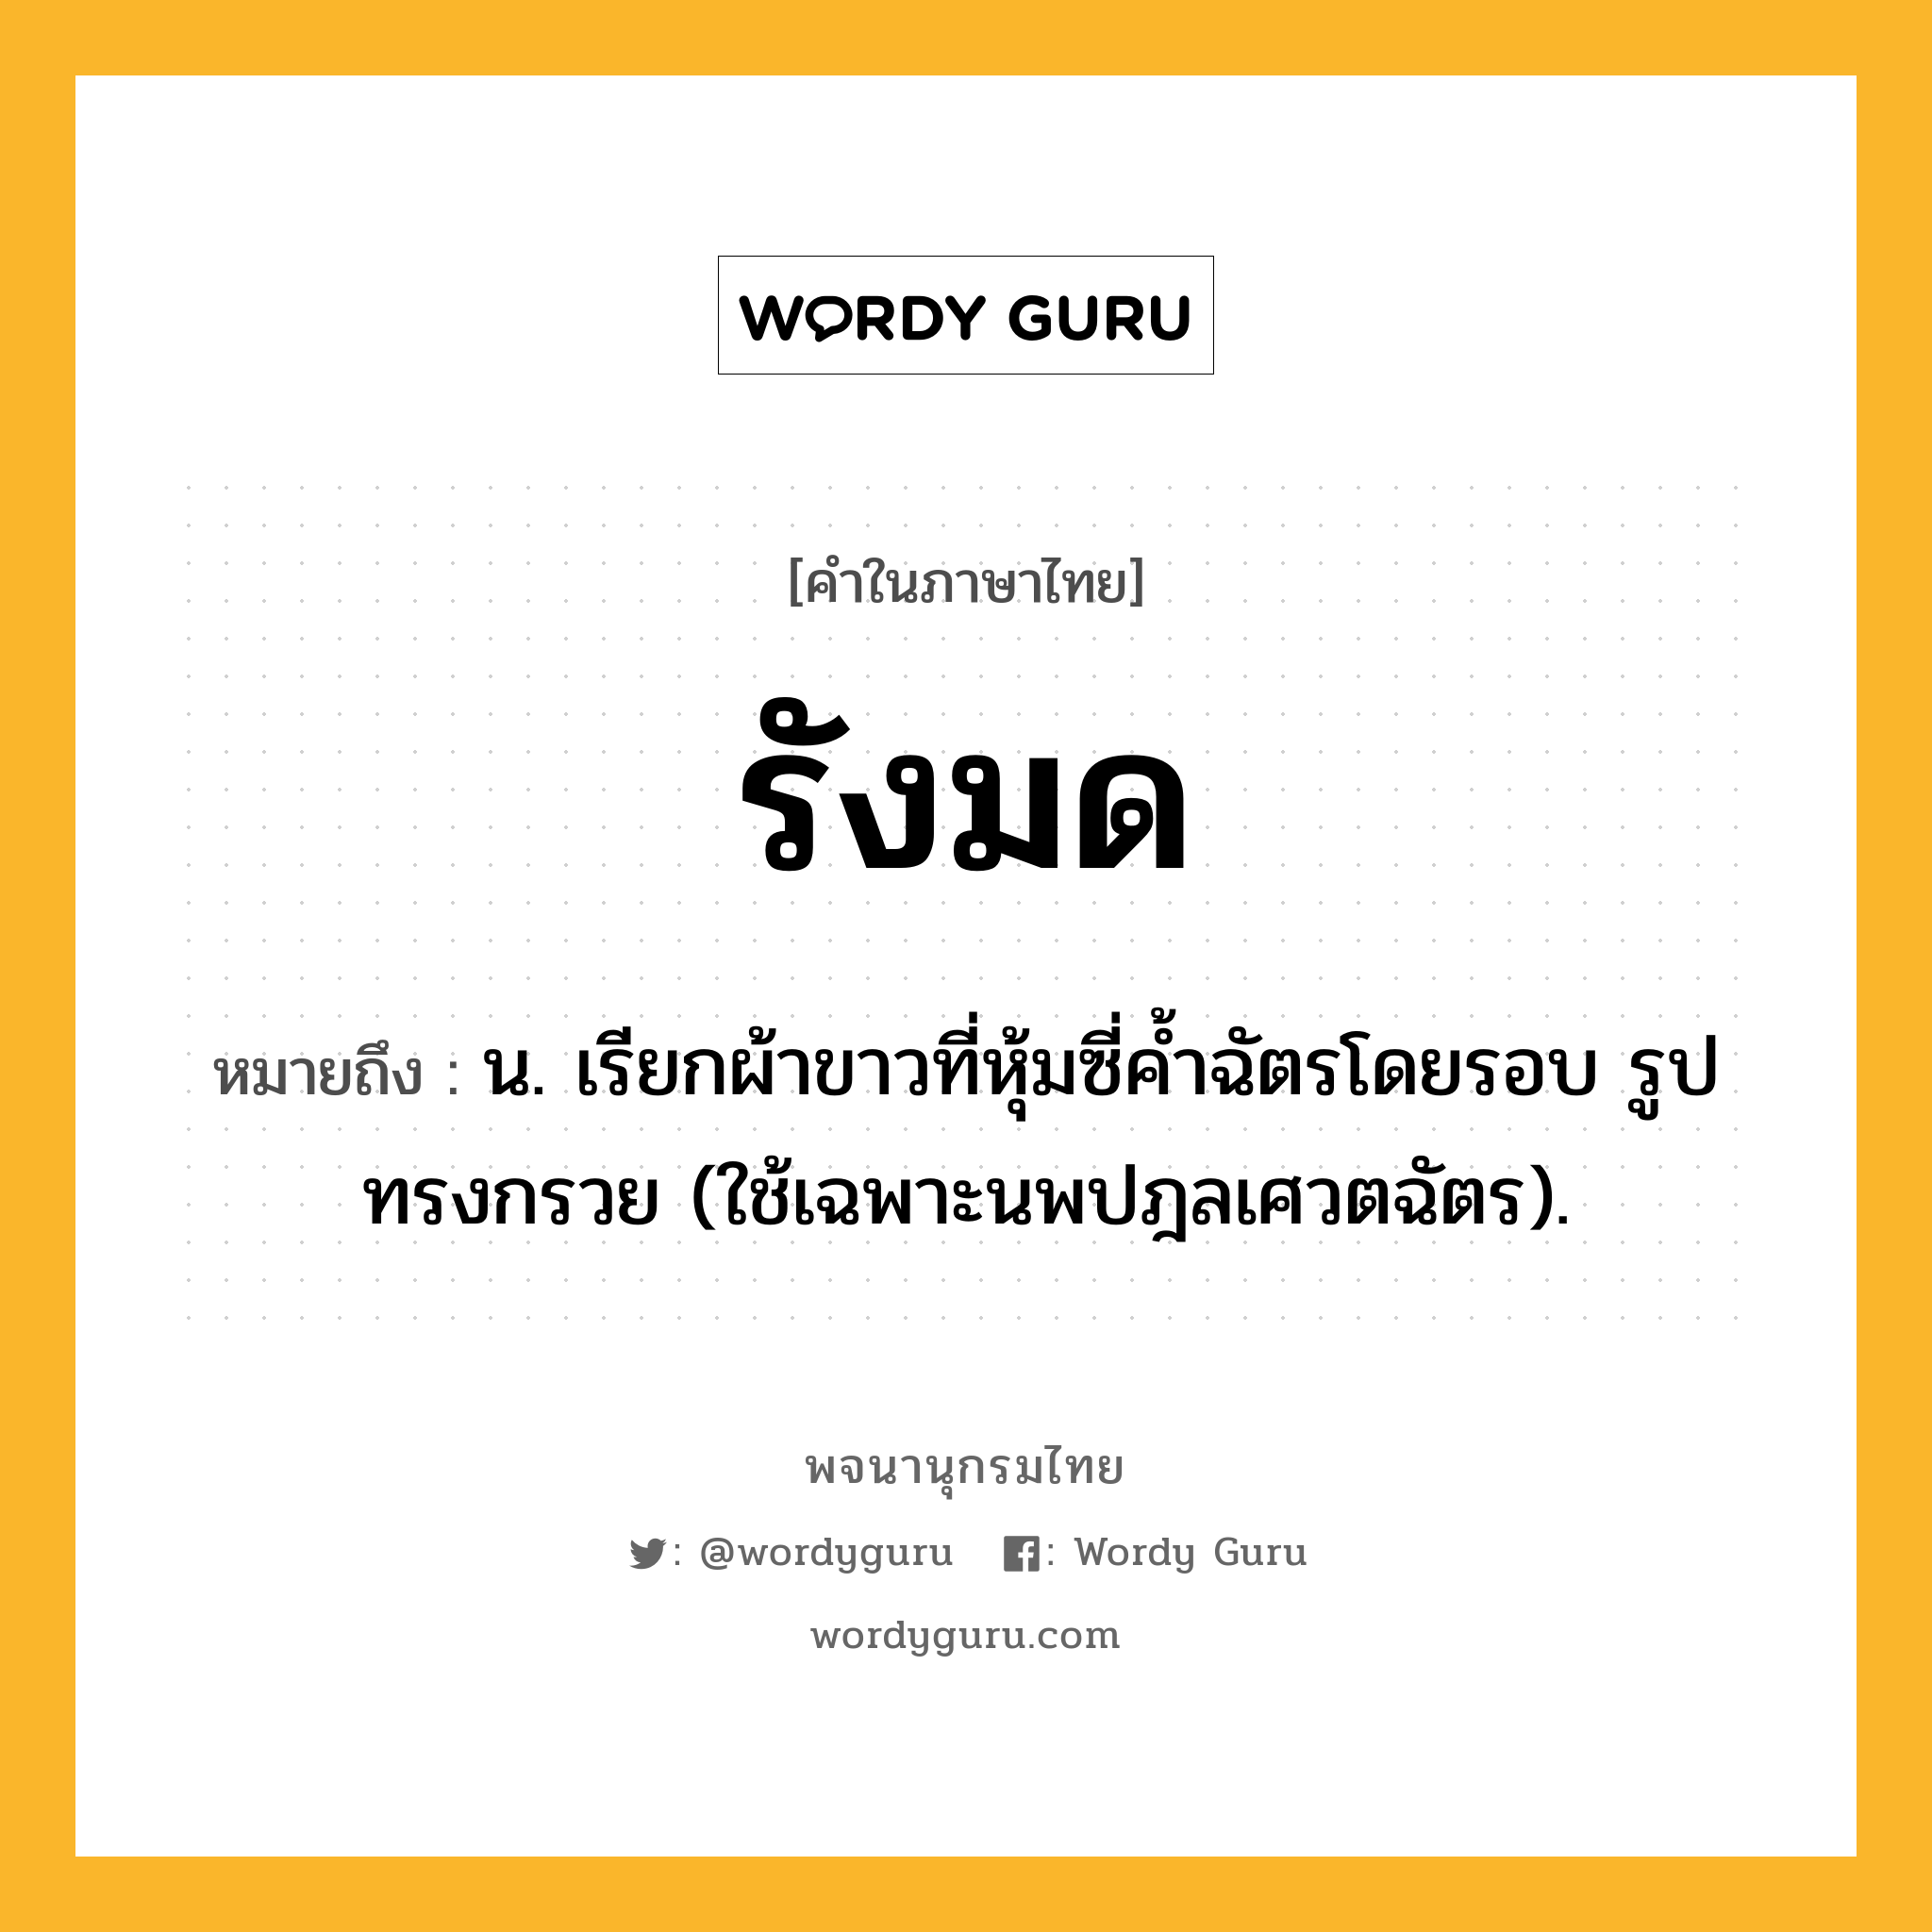 รังมด หมายถึงอะไร?, คำในภาษาไทย รังมด หมายถึง น. เรียกผ้าขาวที่หุ้มซี่คํ้าฉัตรโดยรอบ รูปทรงกรวย (ใช้เฉพาะนพปฎลเศวตฉัตร).